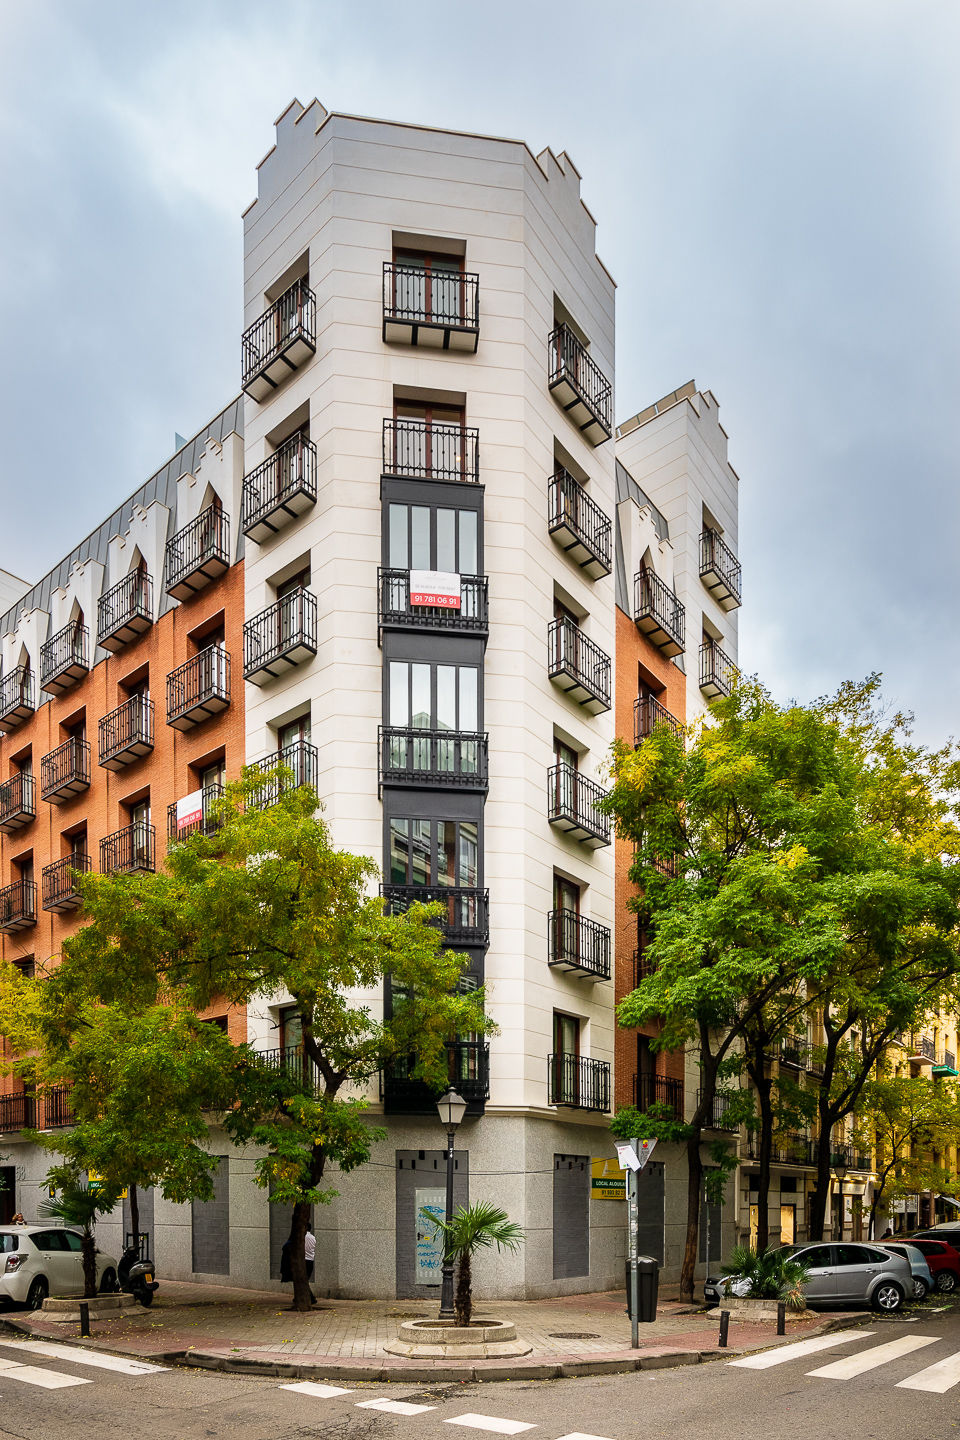 La foto belle, fotografía inmobiliaria y de interiores en Madrid y alrededores - lafotobelle-fotografia-inmobiliaria-rdlcruz-2.jpg